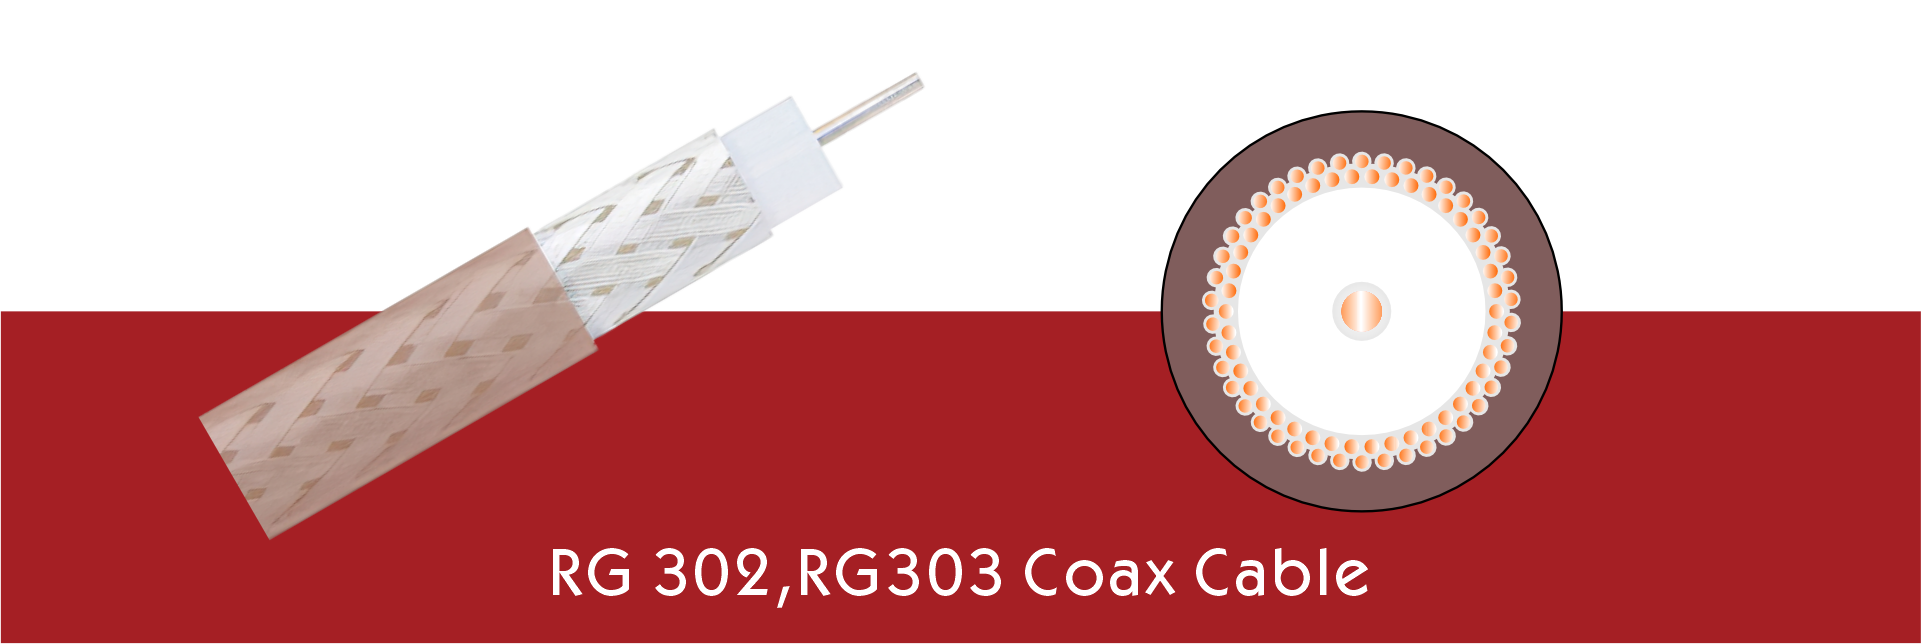 RG 302,RG303 Coax Cable